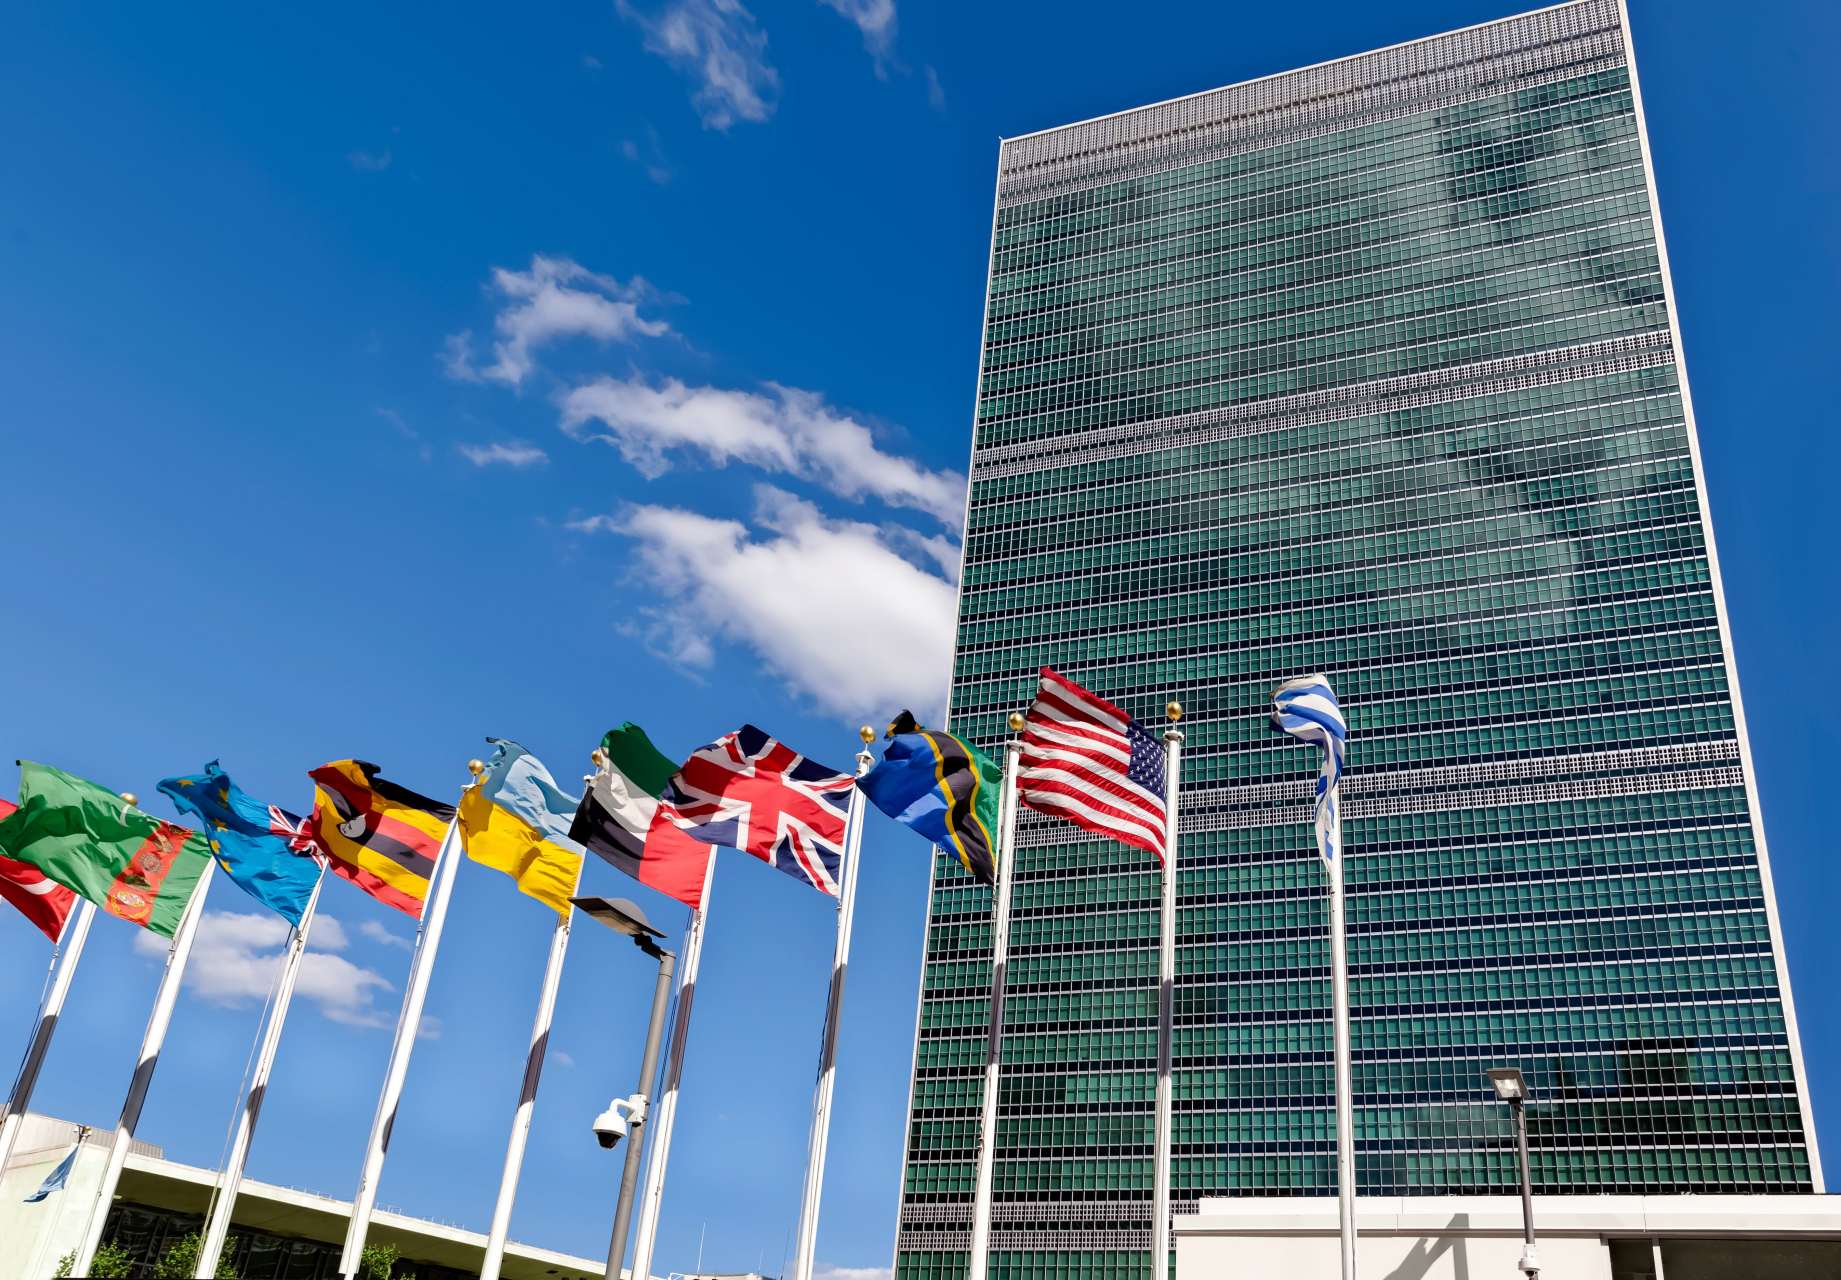 联合国计划对联合国安理会进行改革,新增加6个常任理事国